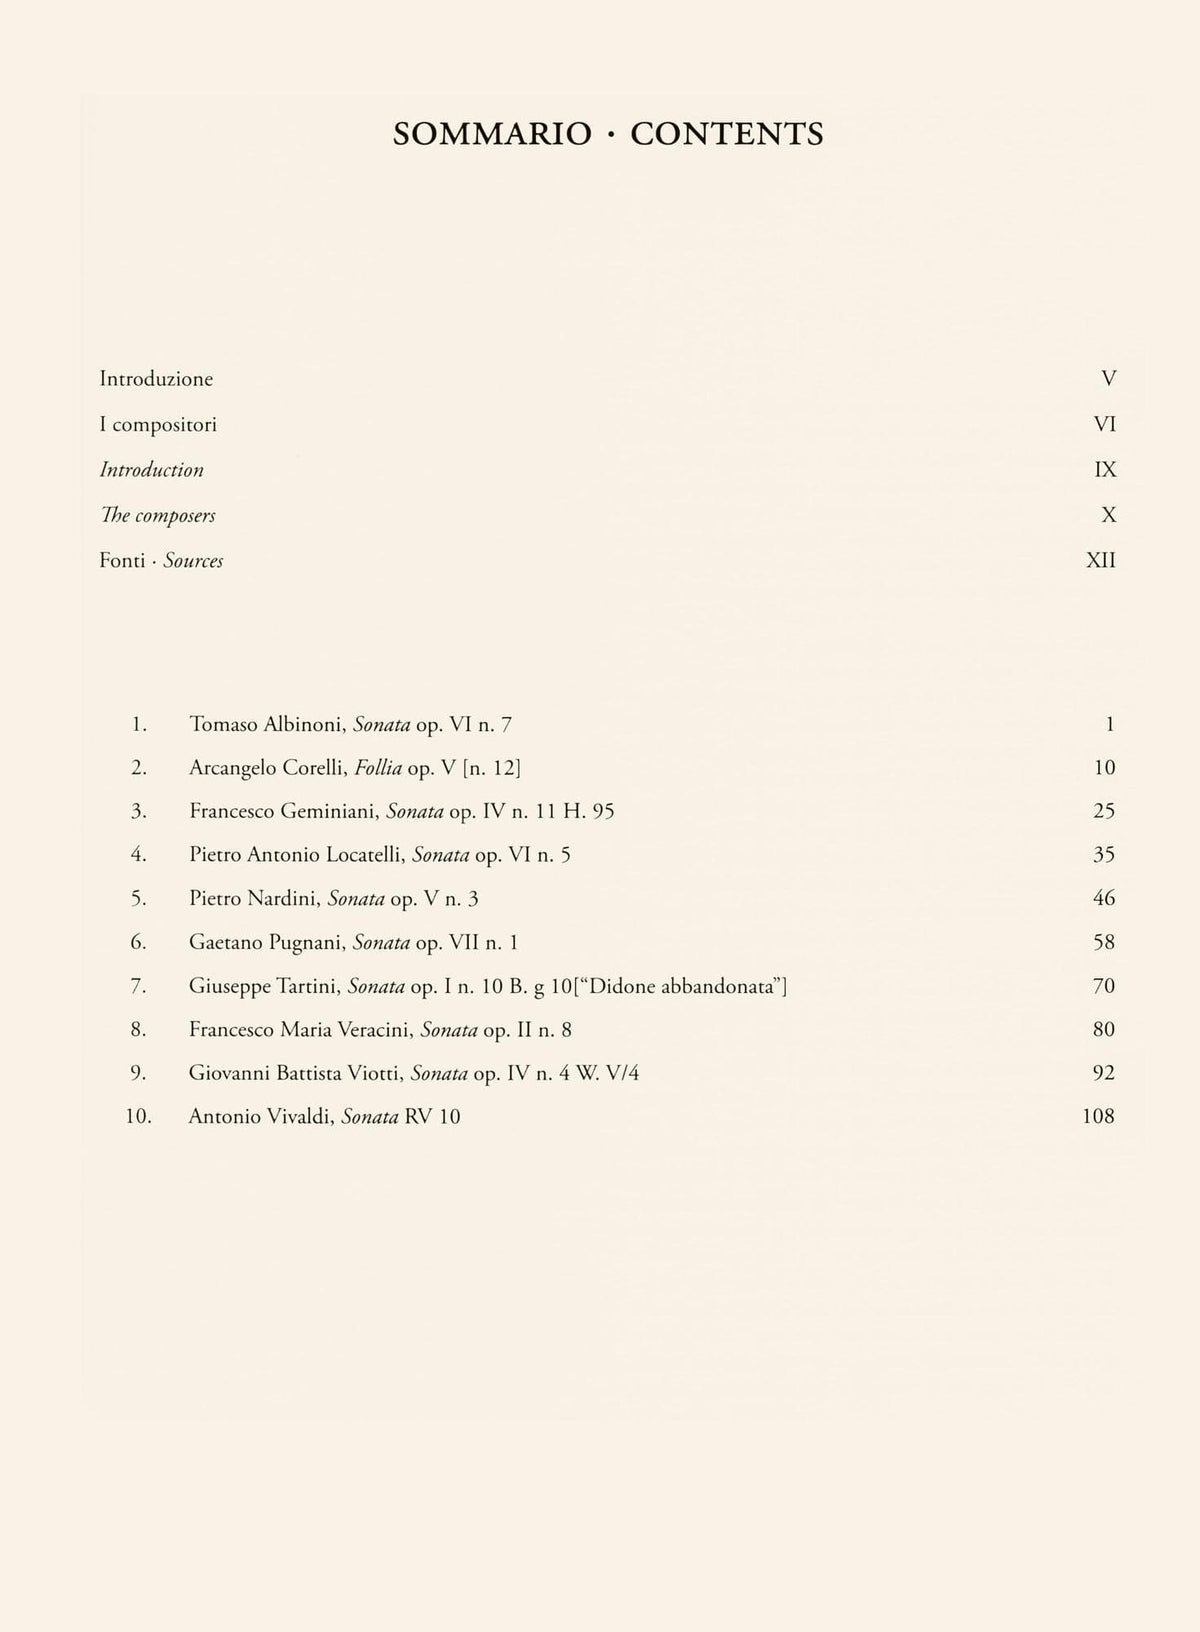 10 Italian Sonatas - for Violin and Continuo - edited by Cesare Fertonani - Ricordi